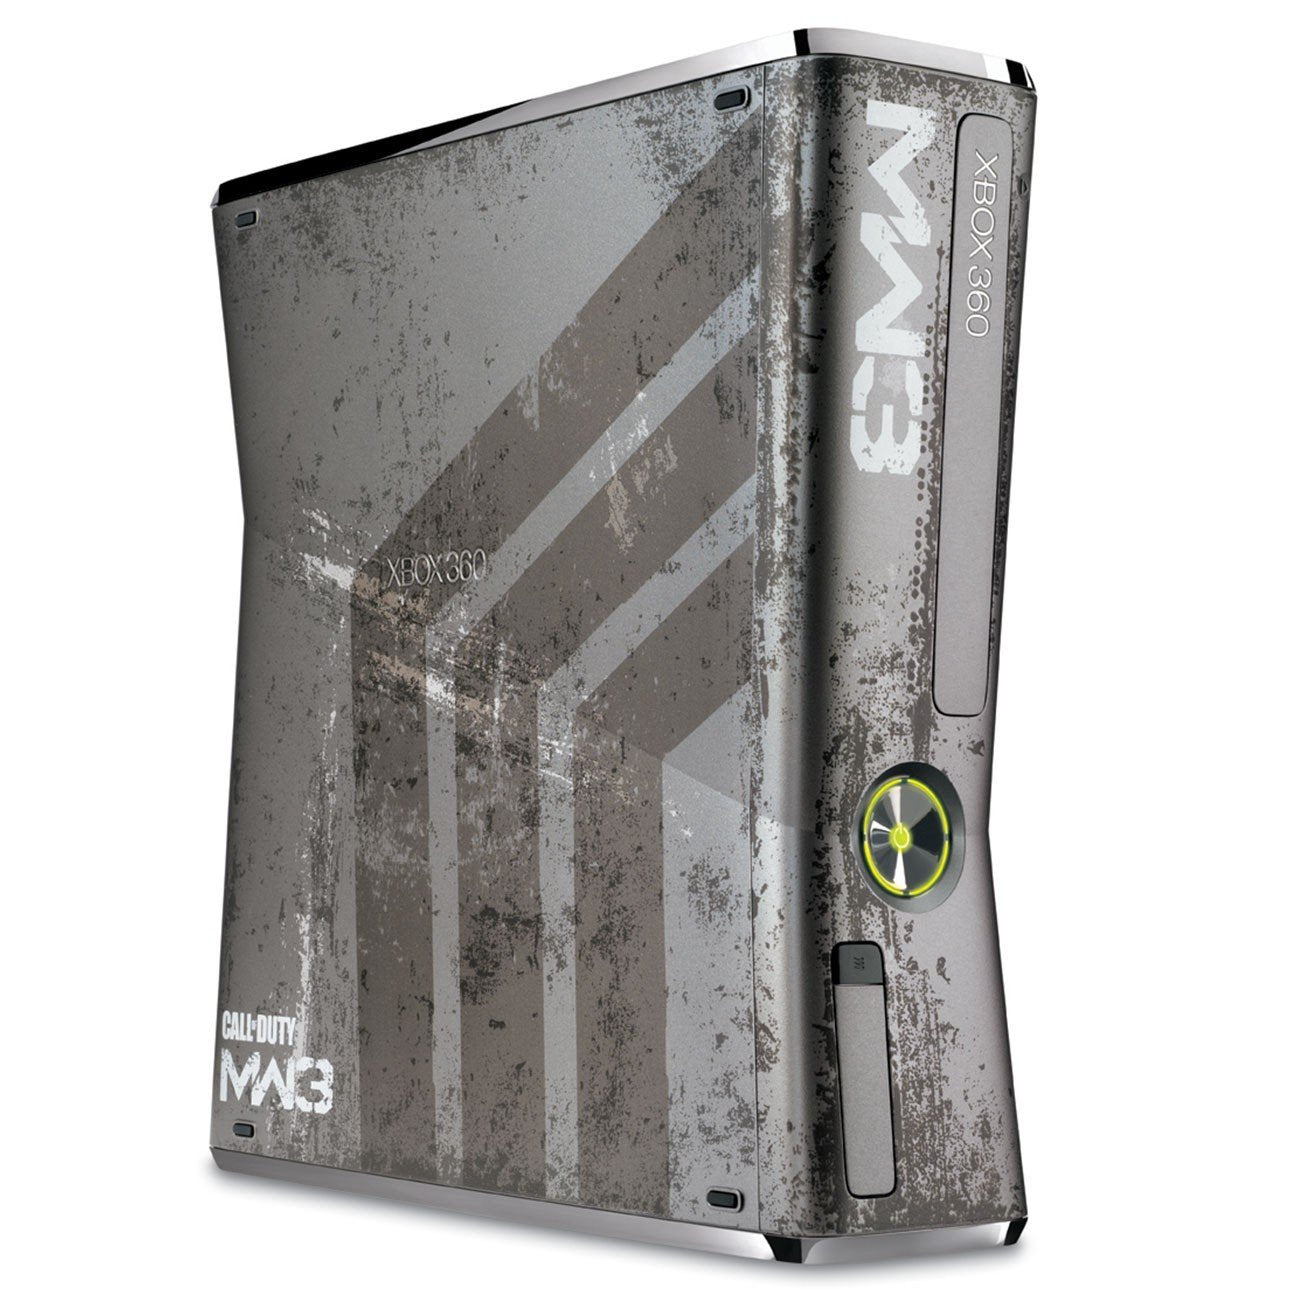 Xbox 360 Slim 320GB Console - Call of Duty: Modern Warfare 3 Limited Edition